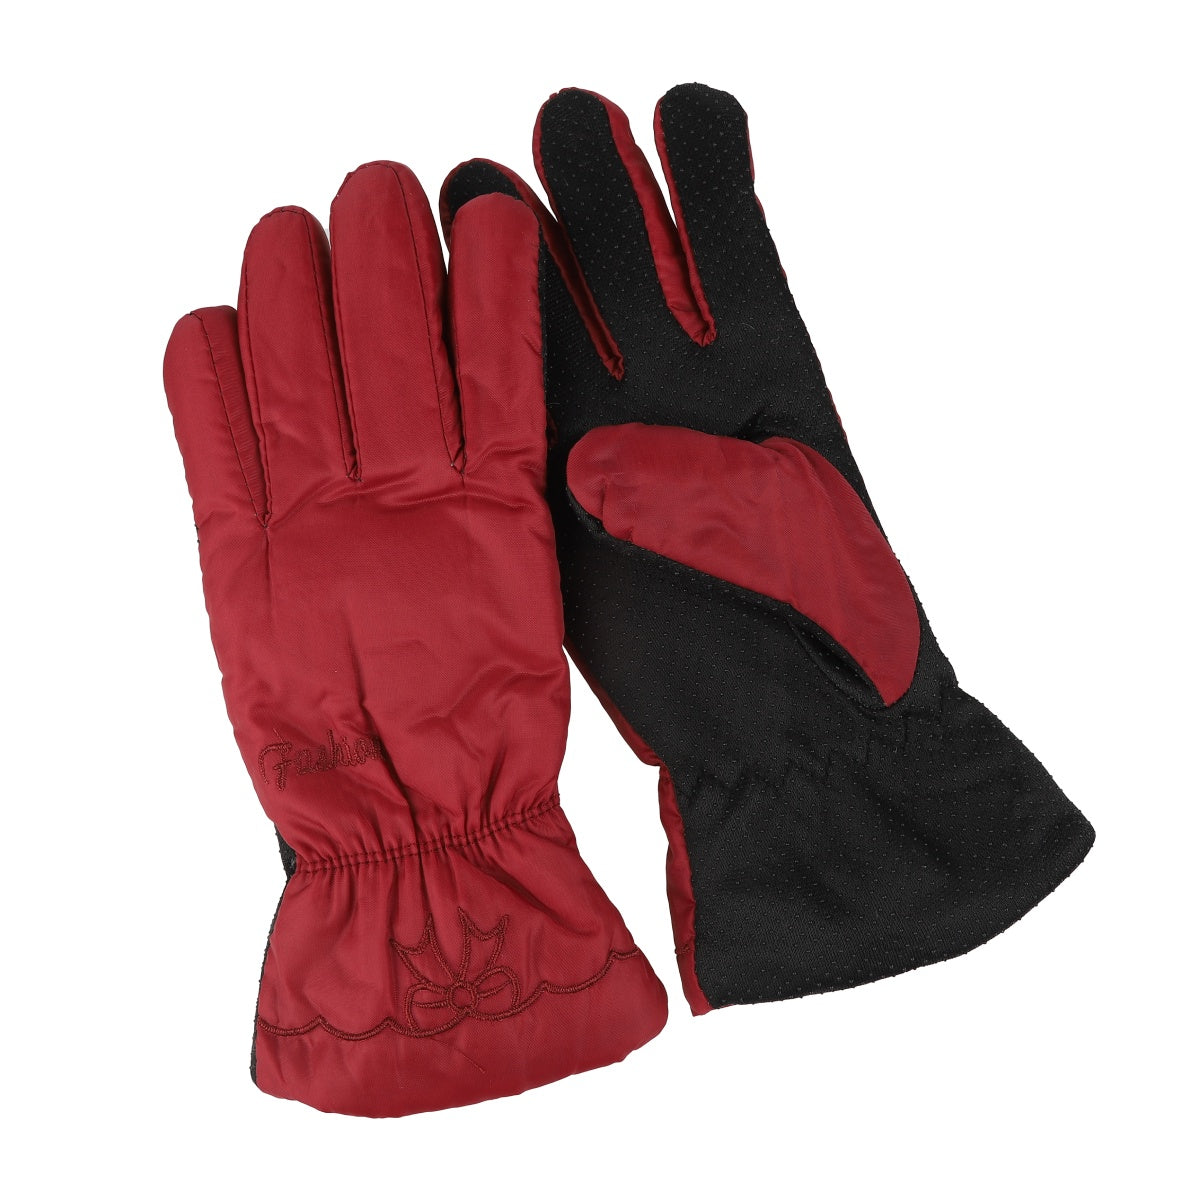 Five Finger Gloves